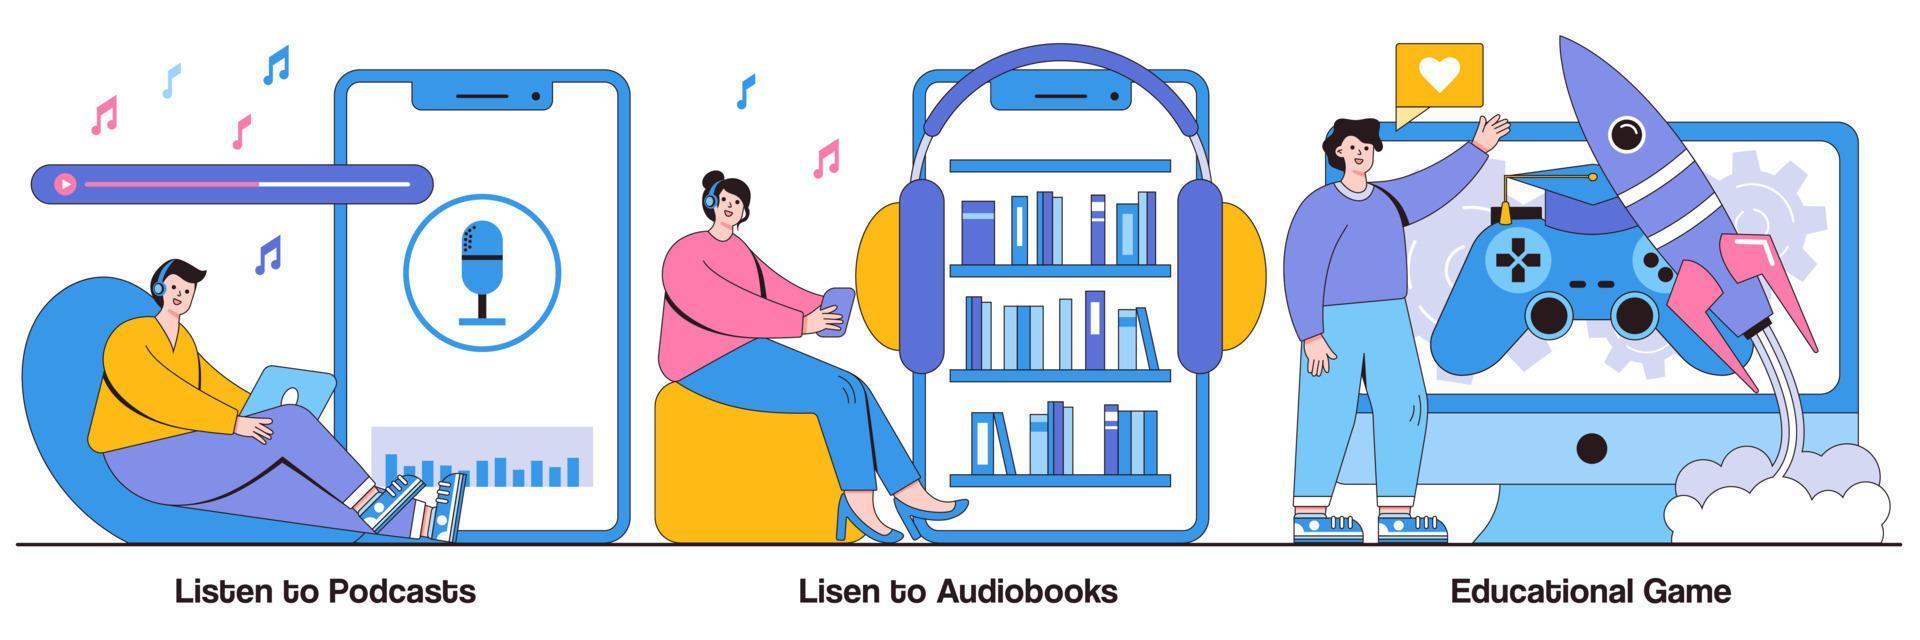 ascolta podcast e audiolibri, pacchetto illustrato di giochi educativi vettore